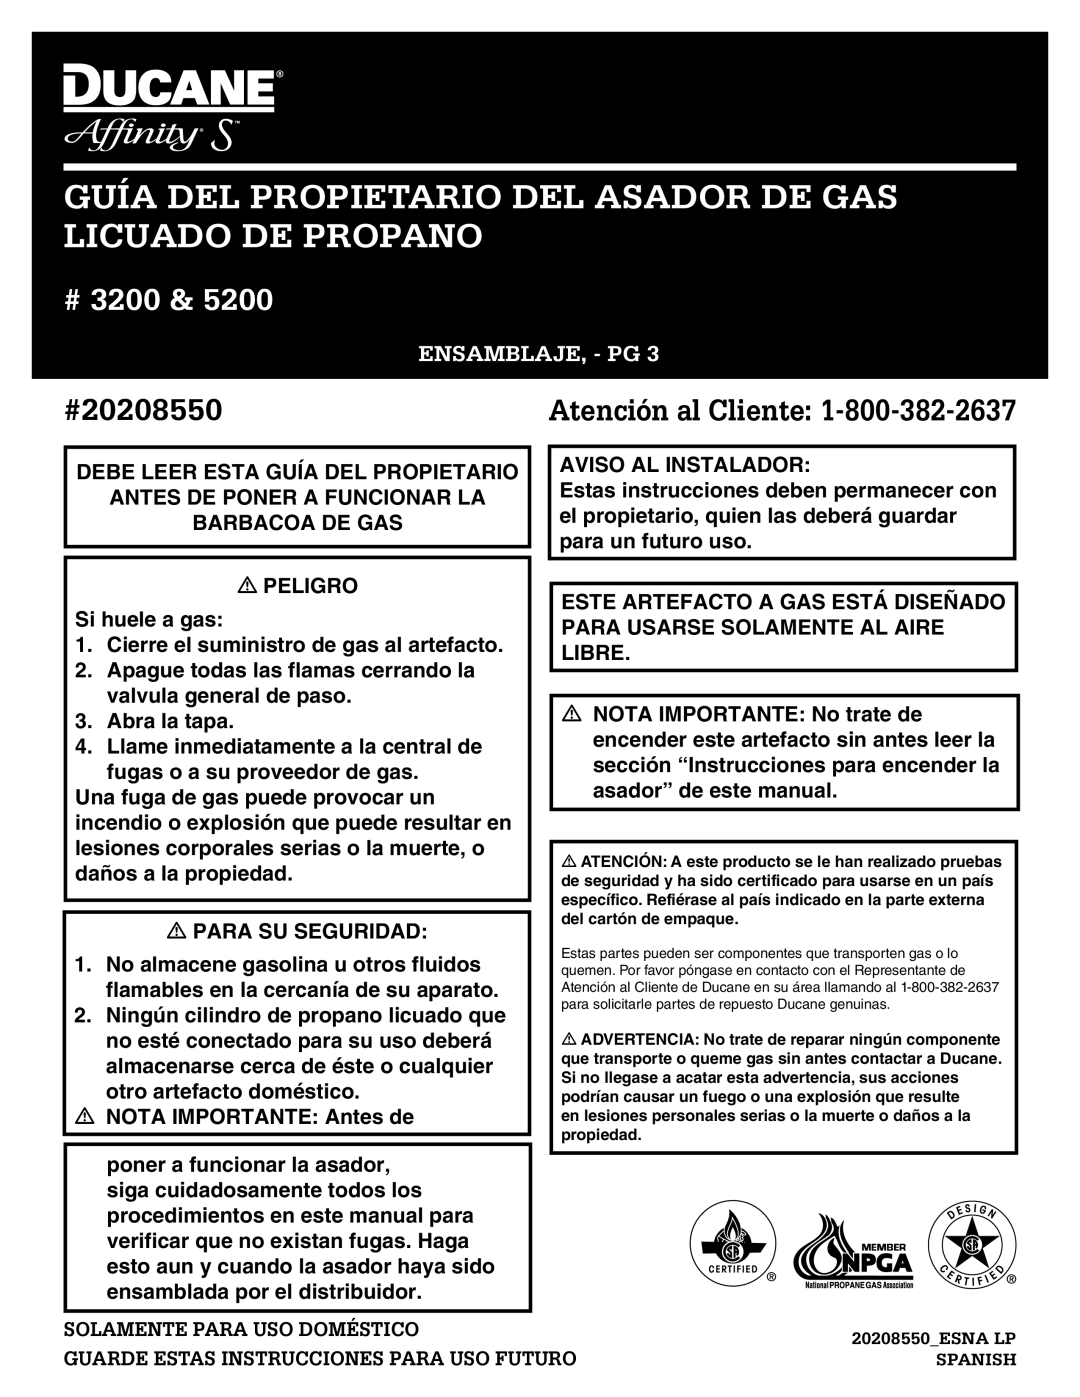 Ducane 3200 Guía Del Propietario Del Asador De Gas Licuado De Propano, Ensamblaje, - Pg, Solamente Para Uso Doméstico 